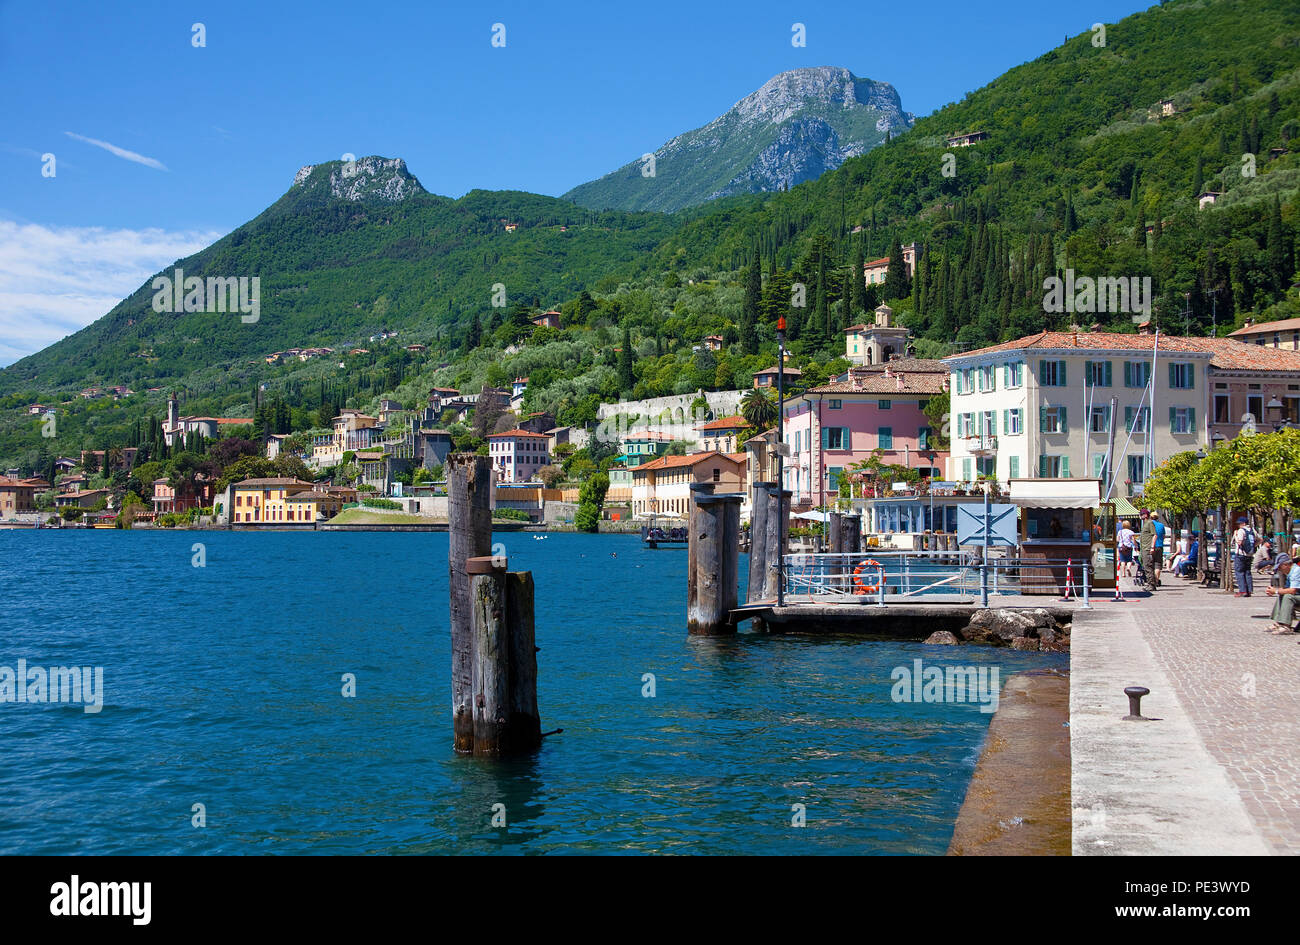 Seepromenade bei Gargnano, Gardasee, Lombardei, Provinz Brescia, Italien | Lake promenade at Gargnano, province Brescia, Garda lake, Lombardy, Italy Stock Photo